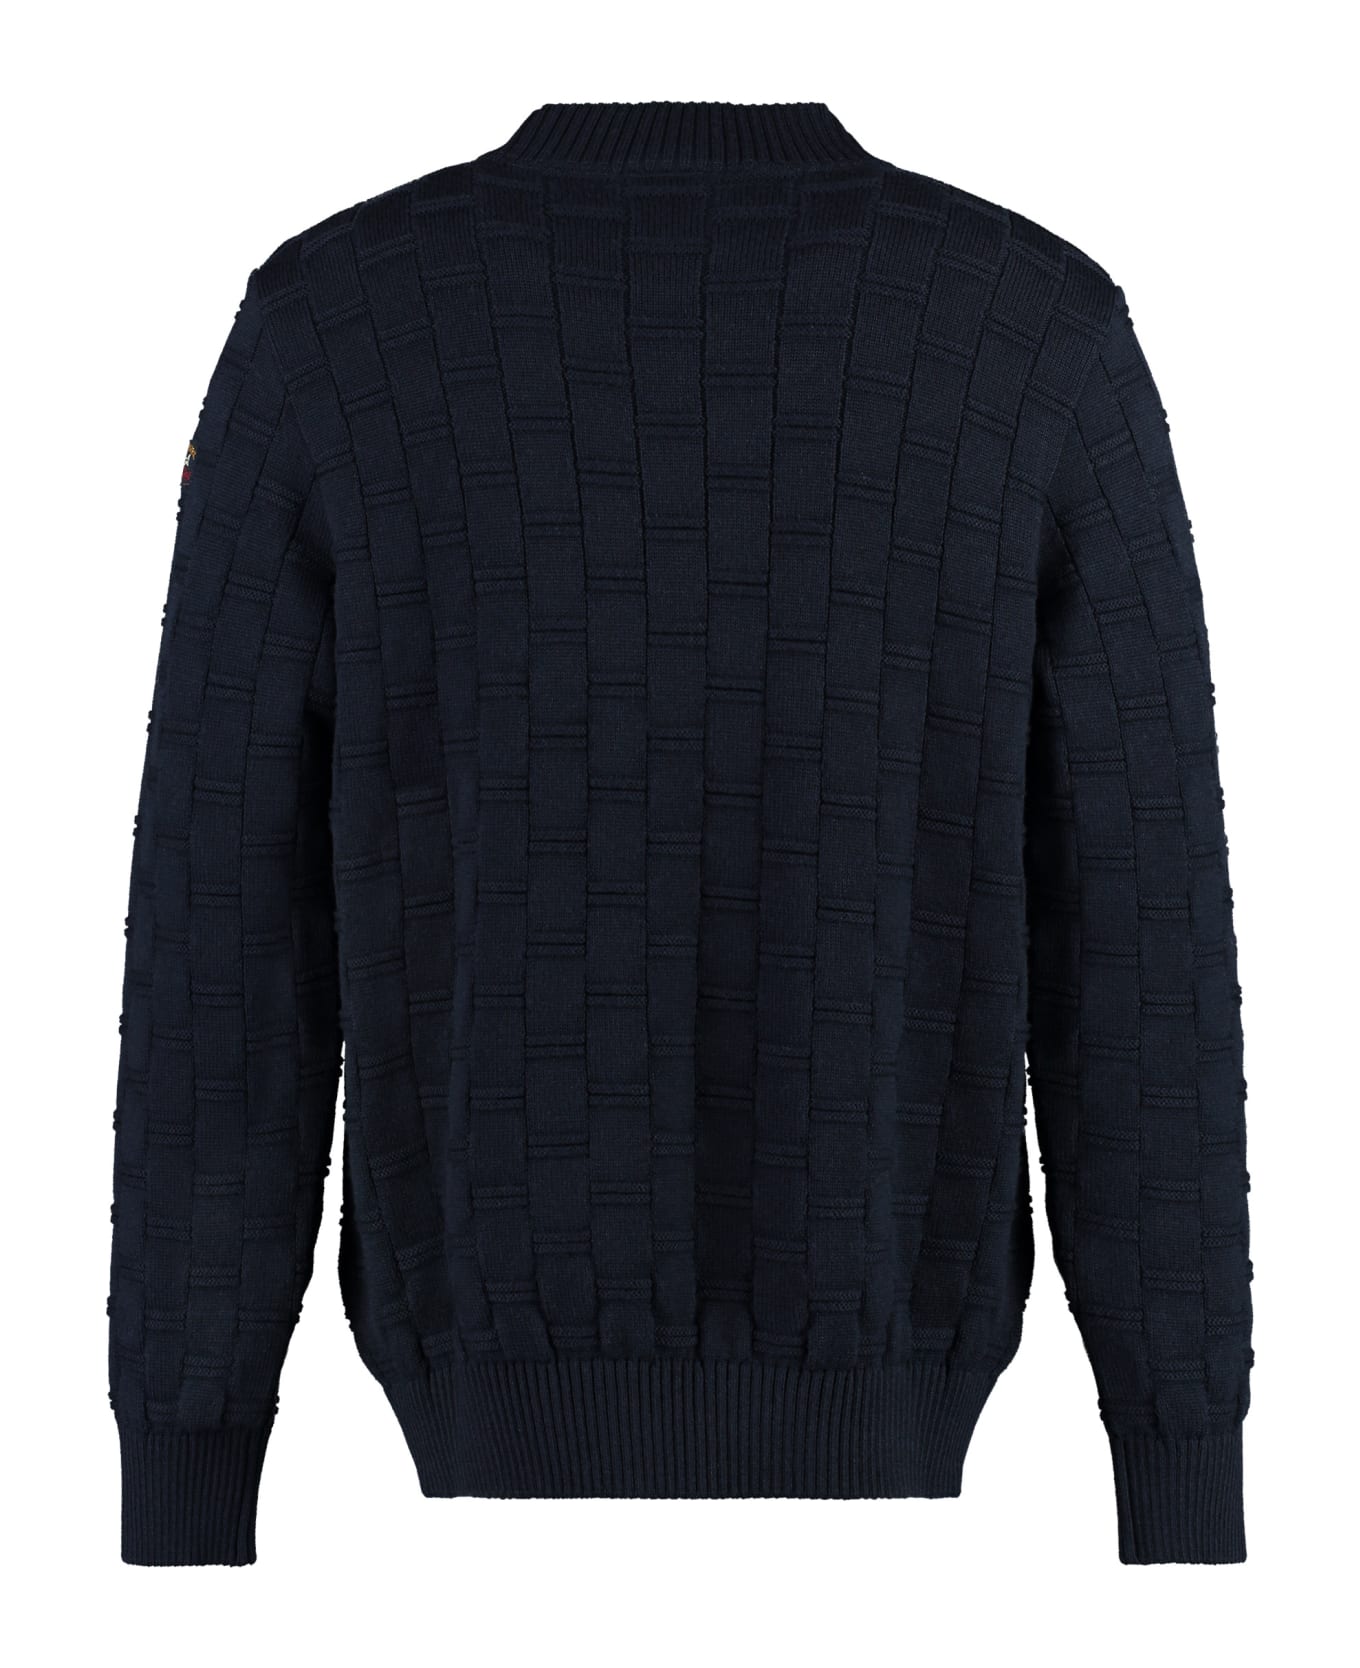 Paul&Shark Virgin Wool Crew-neck Sweater - blue ニットウェア